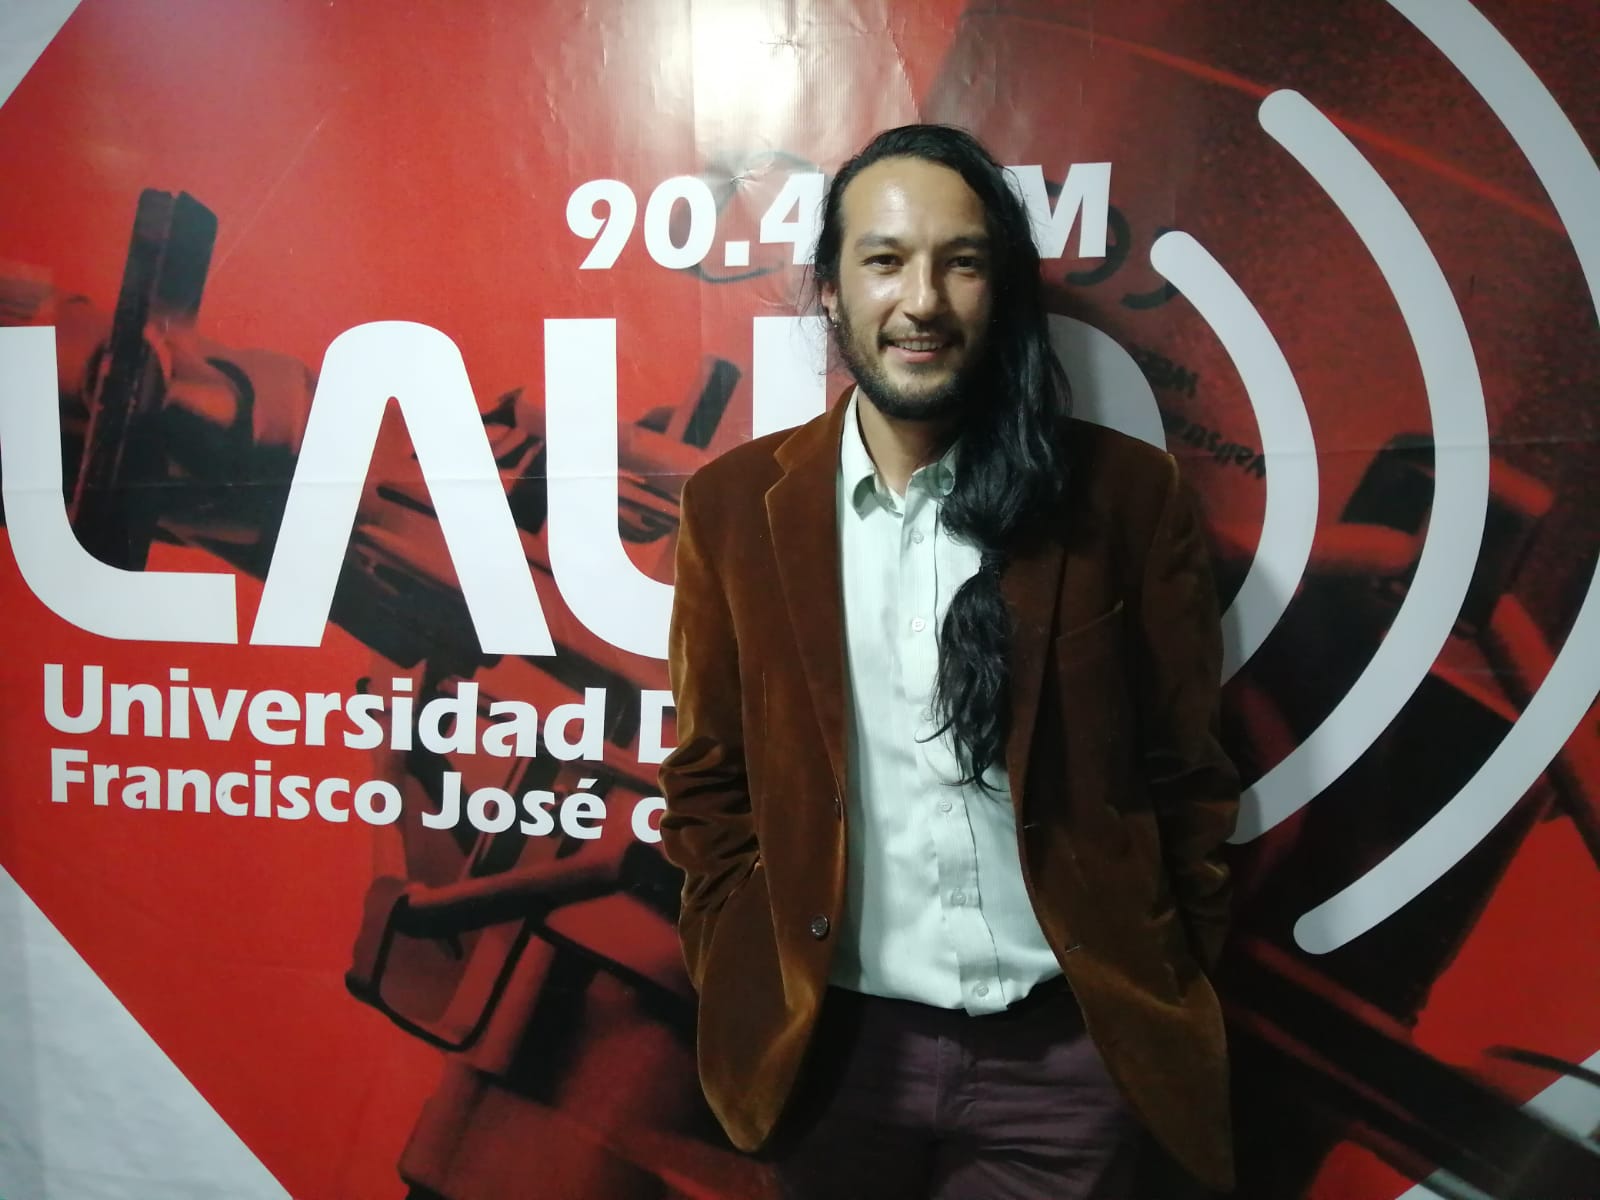 Imagen noticia ‘KMKZ’, el proyecto colombiano en el Festival de Cine de Guadalajara